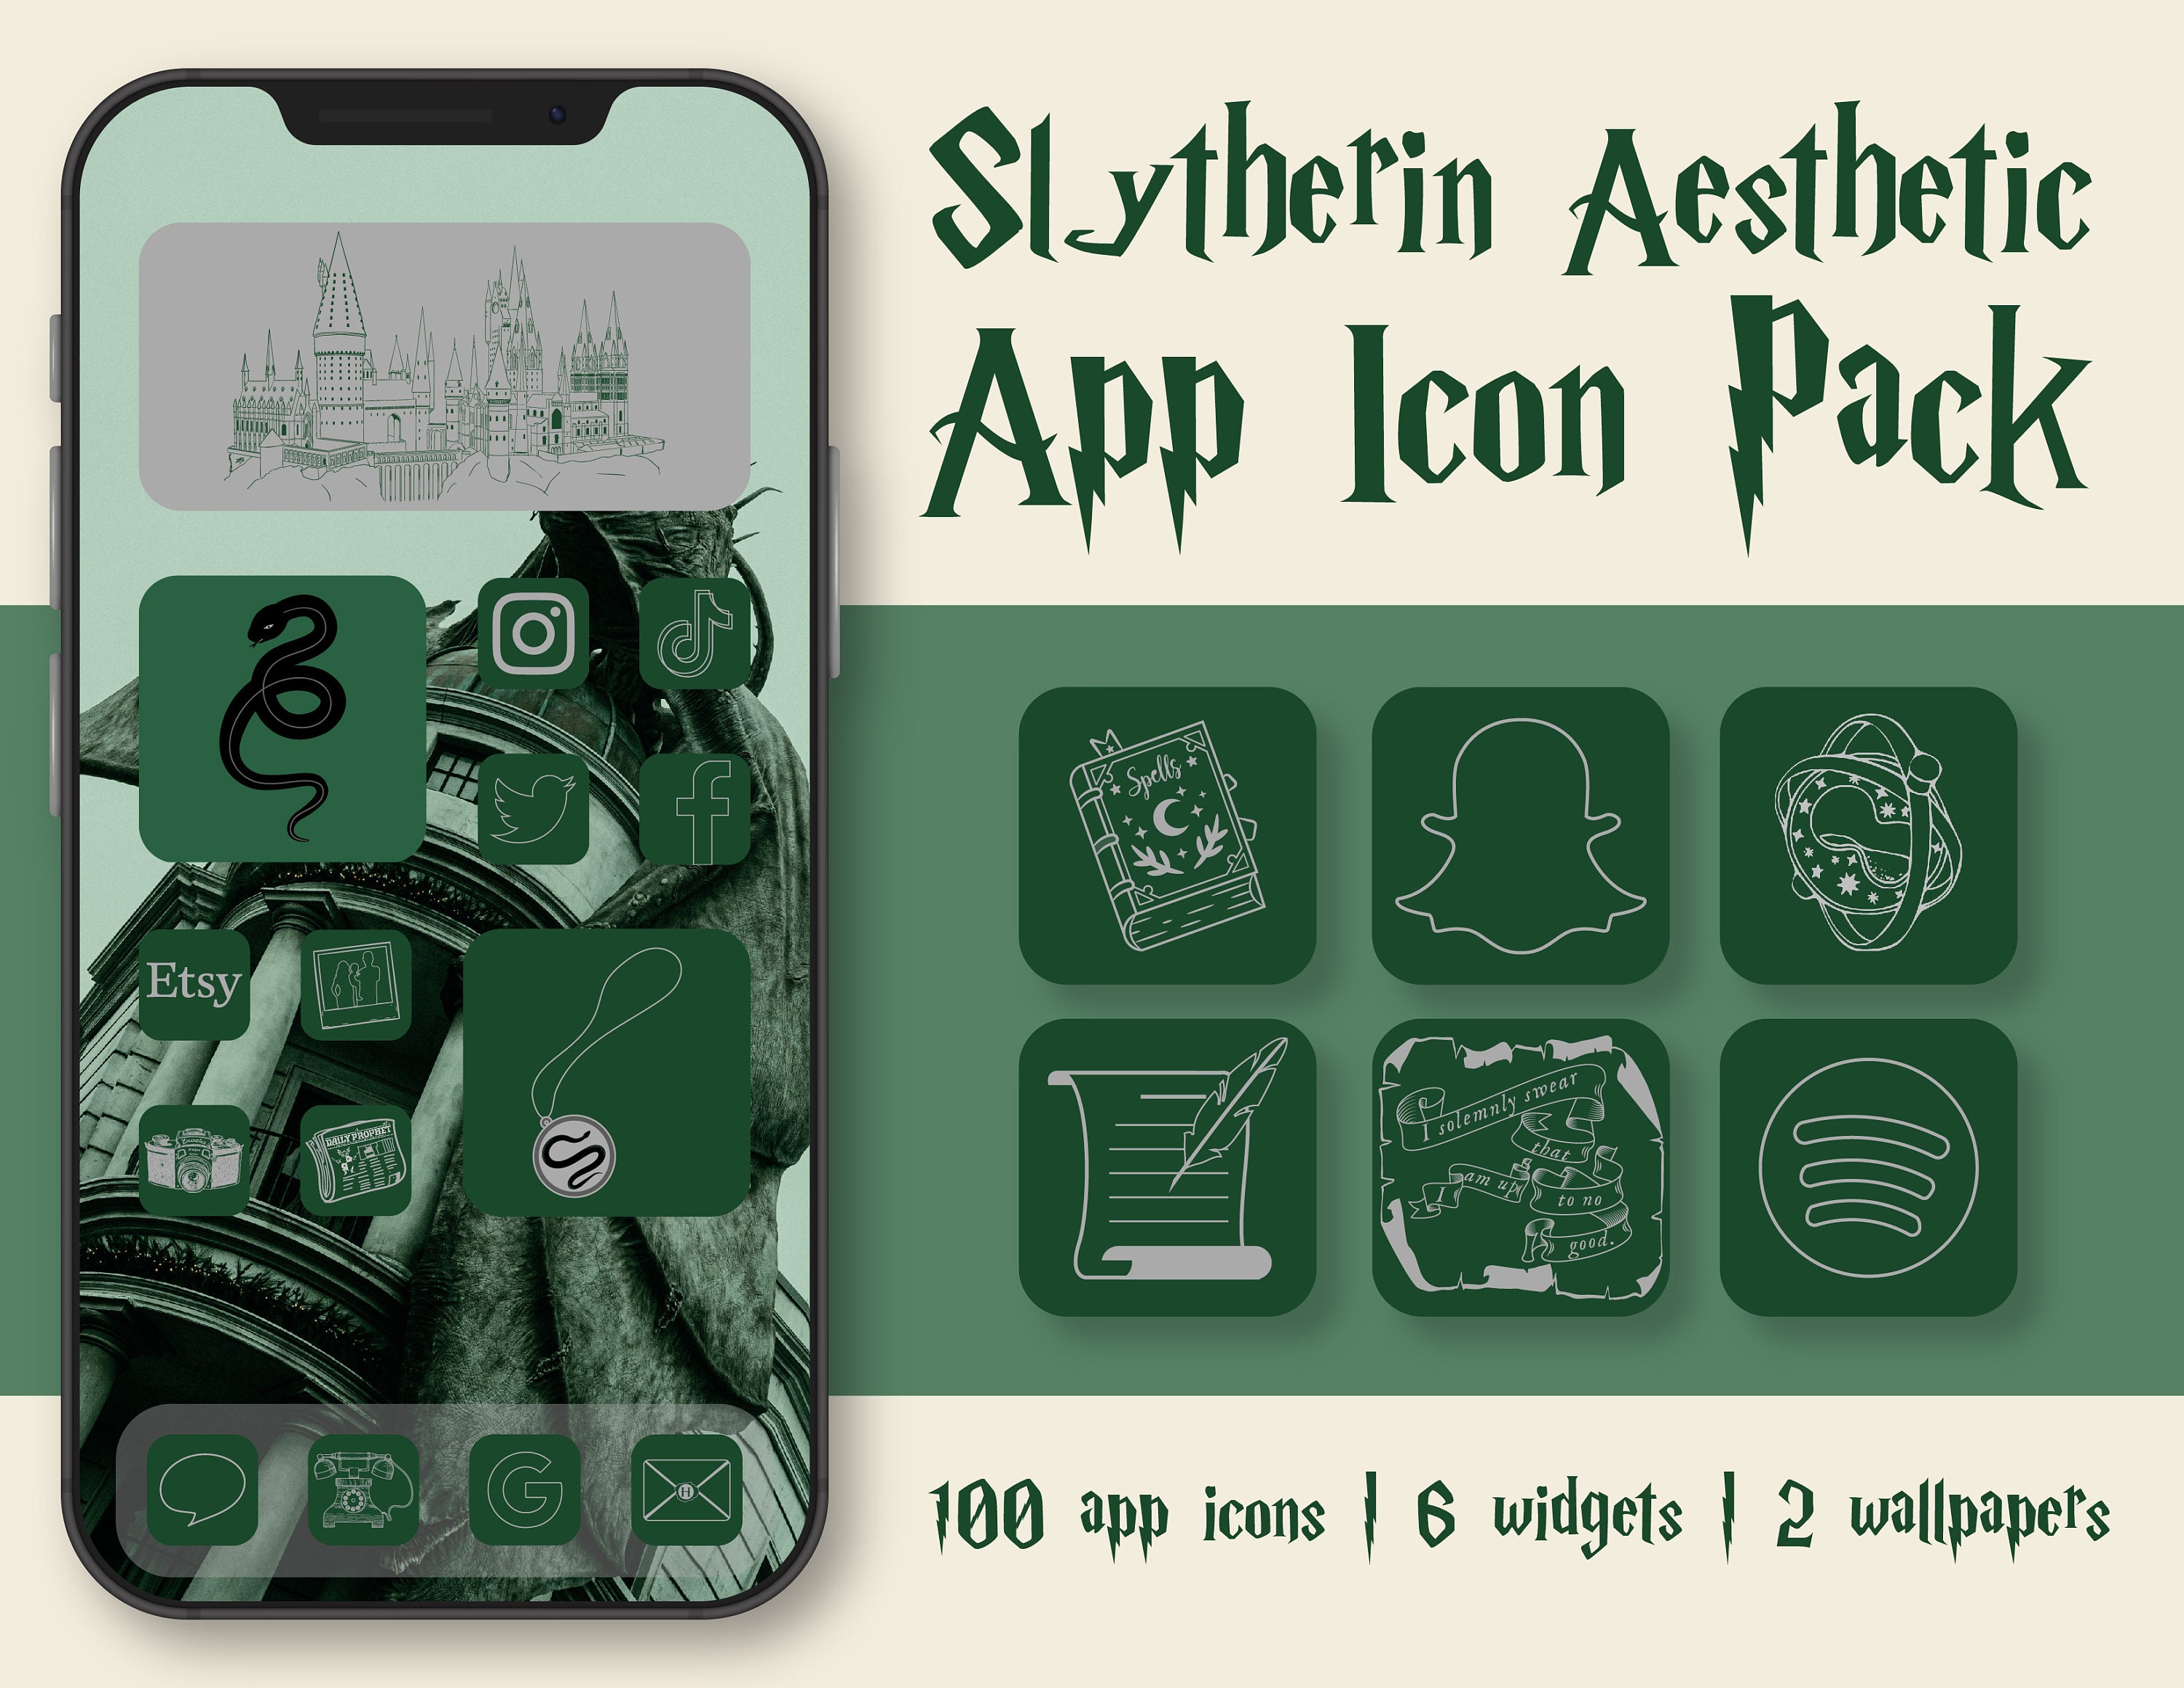 Slytherin Wallpaper, Top Free 30+ Slytherin Backgrounds, Slytherin